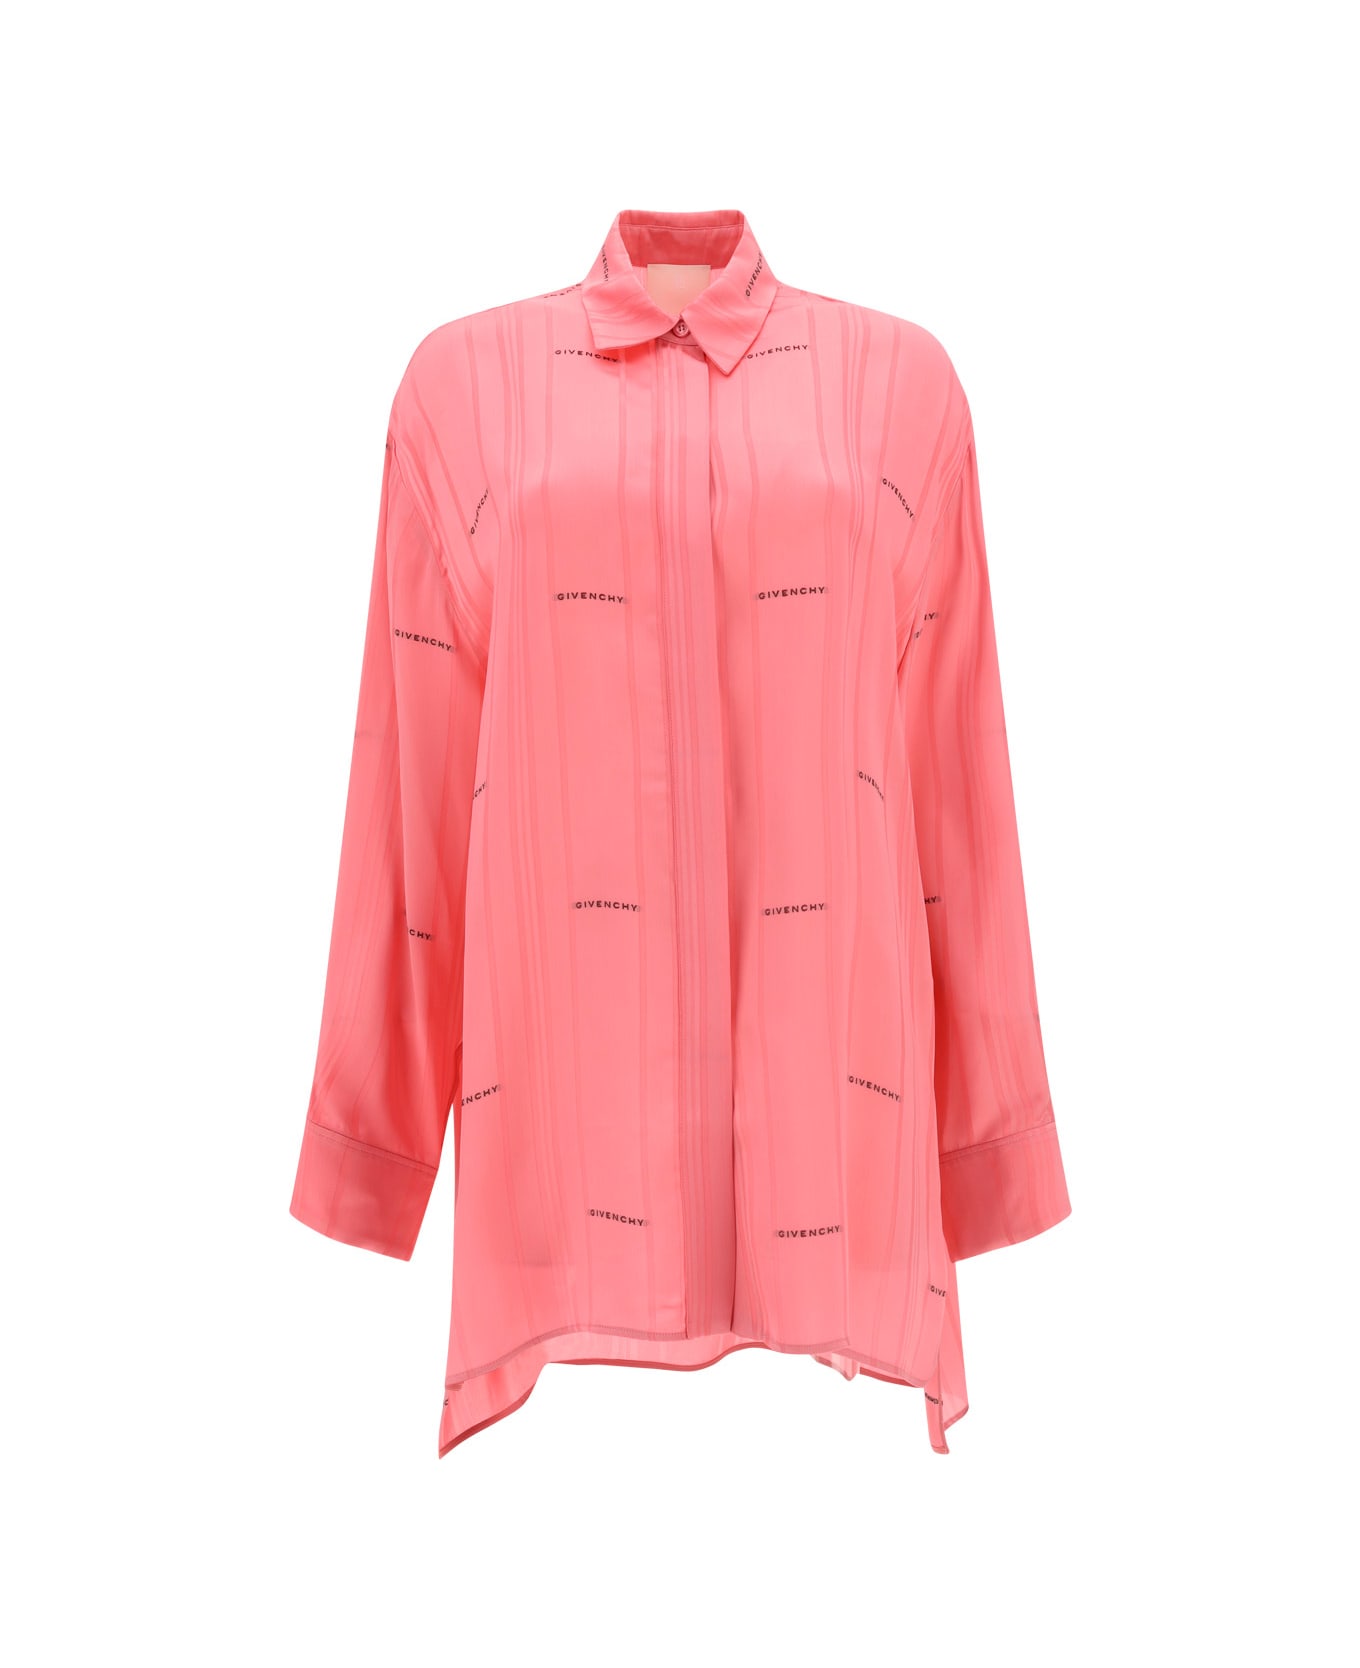 Givenchy Shirt - Bright Pink